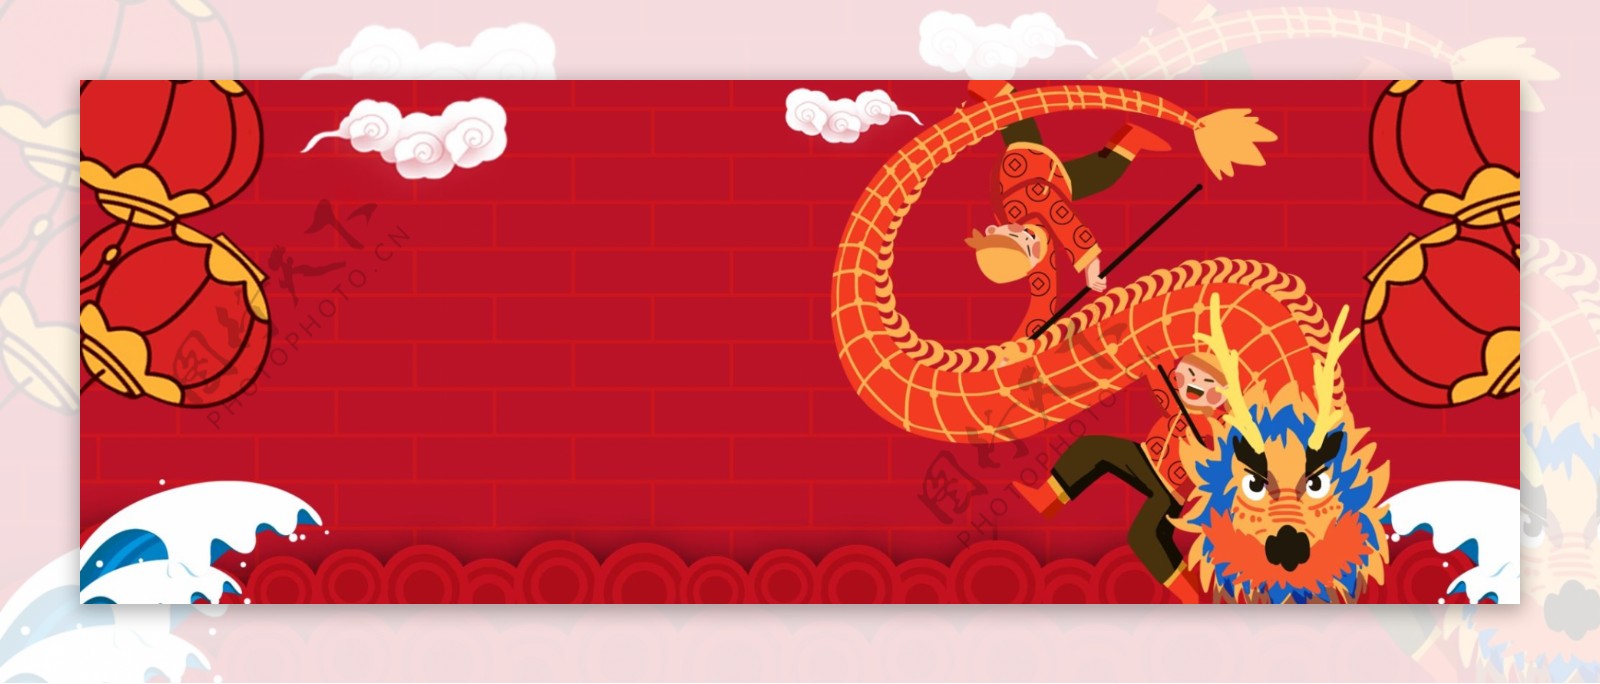 元宵节正月十五舞狮舞龙海报背景